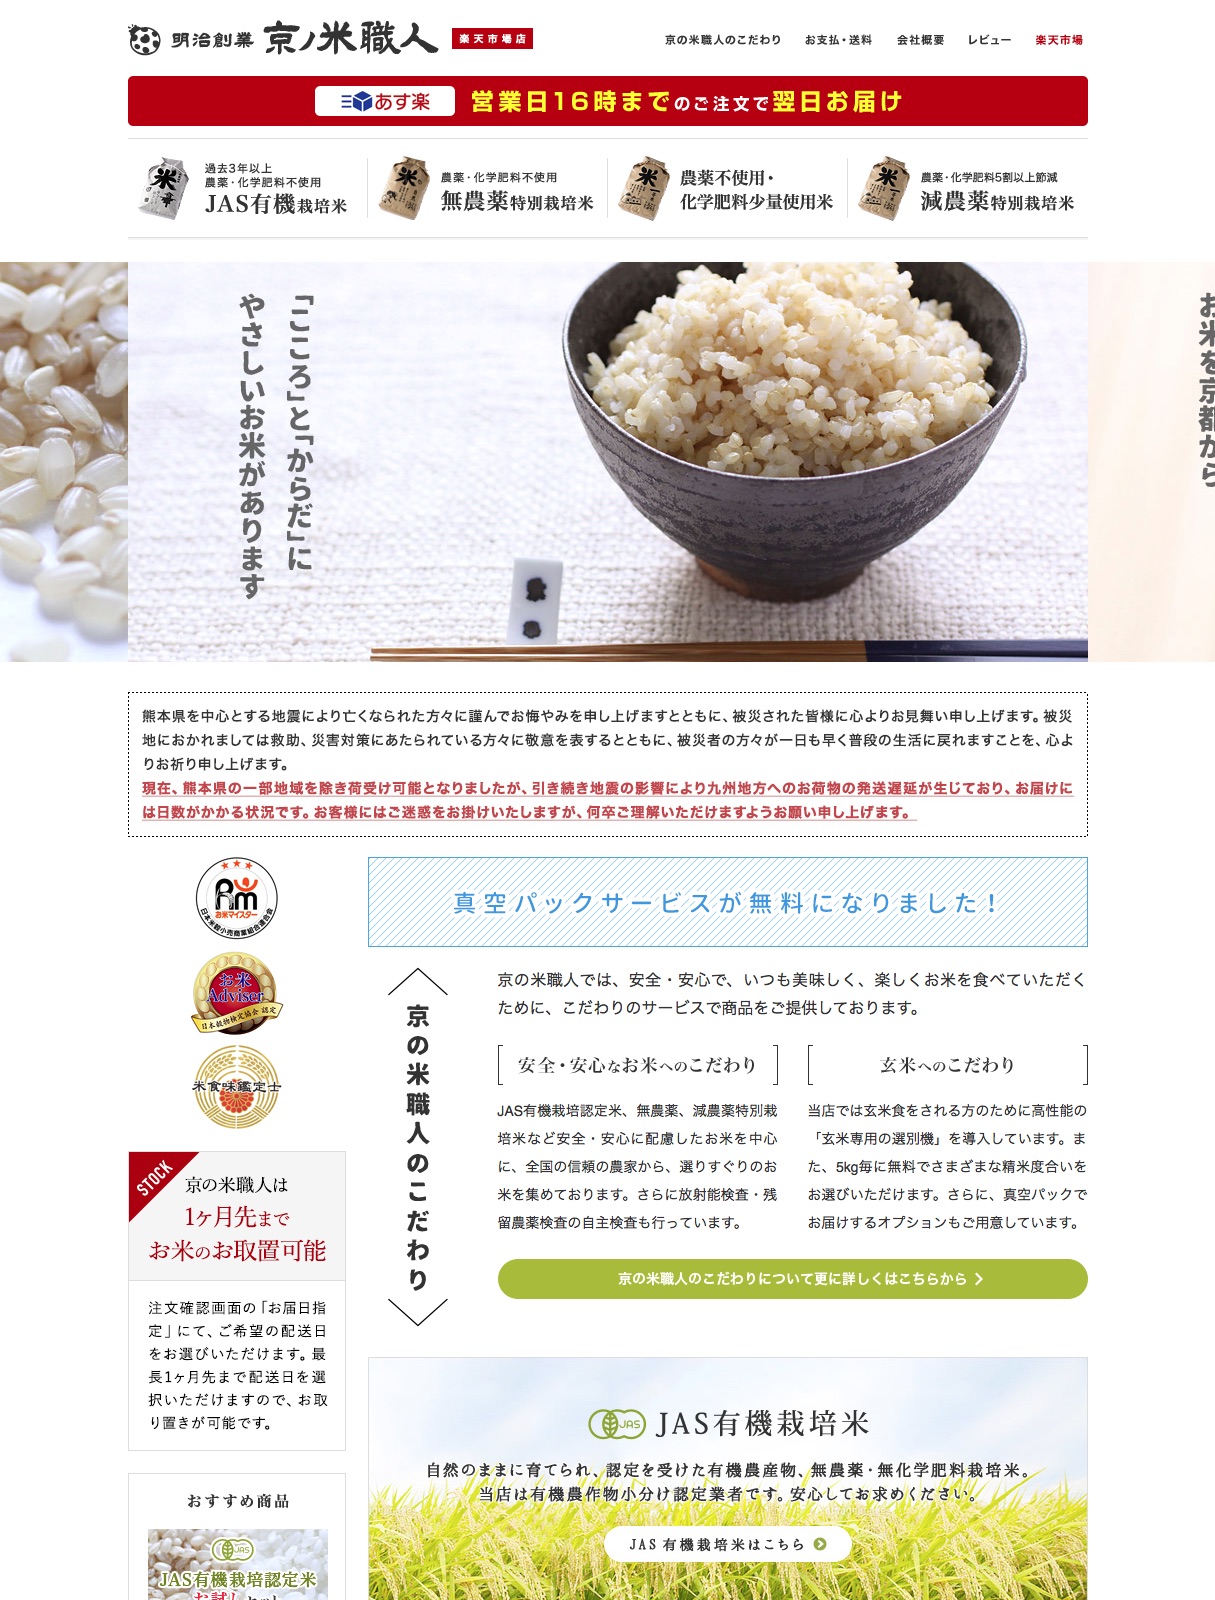 京の米職人は、JAS有機栽培認定米、無農薬・減農薬特別栽培米など安全・安心に配慮したお米を中心に、全国の信頼の農家から選りすぐりのお米を集めています。